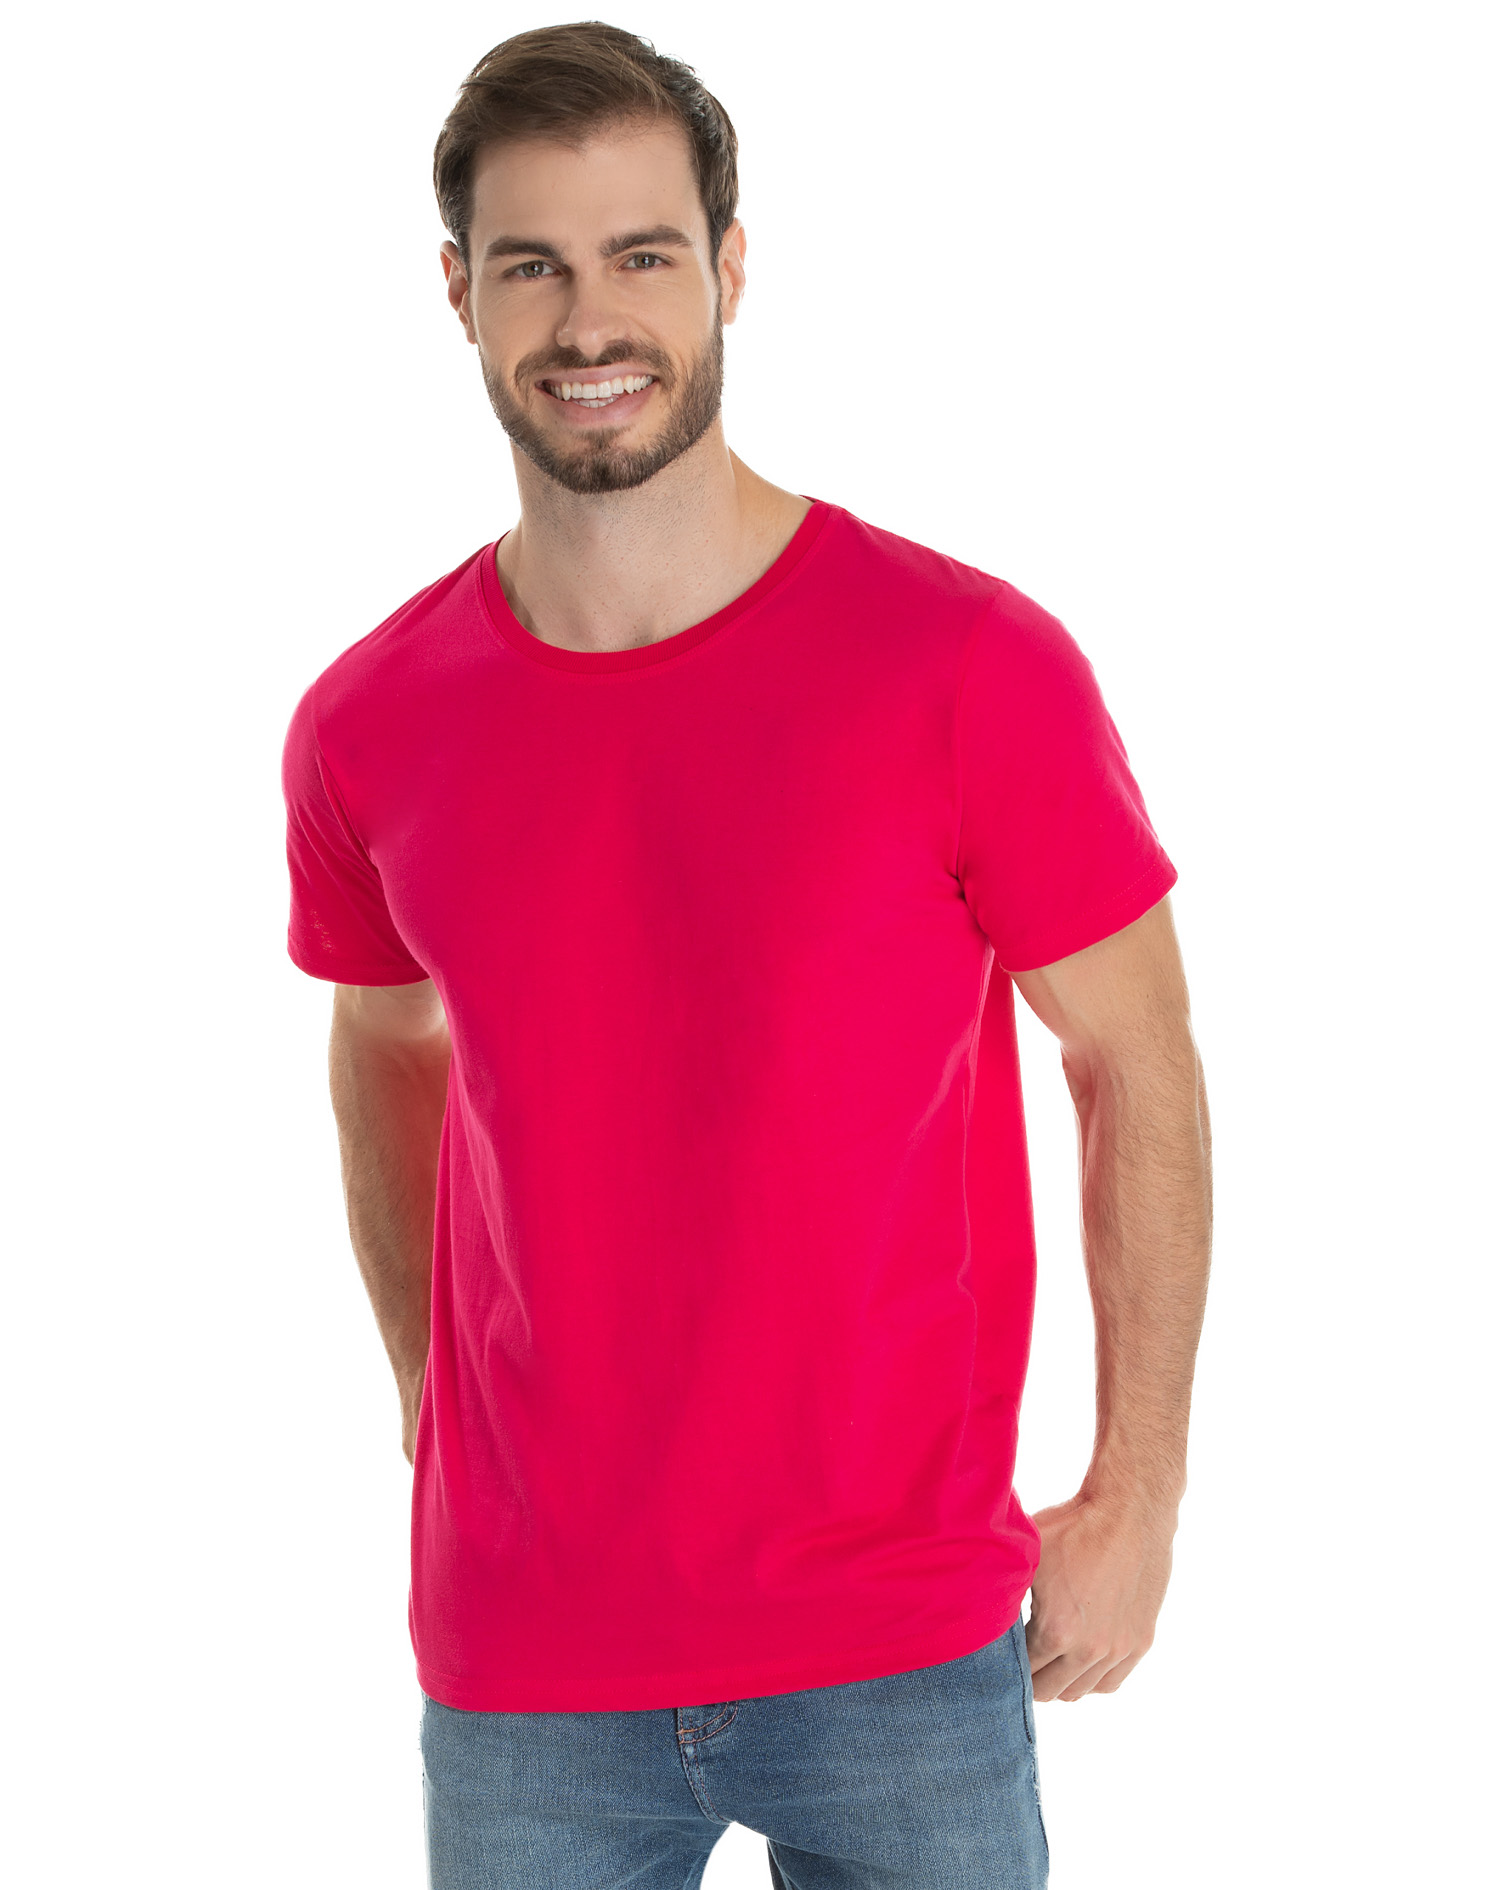 camiseta infantil basica lisa algodao rosa pink unissex en